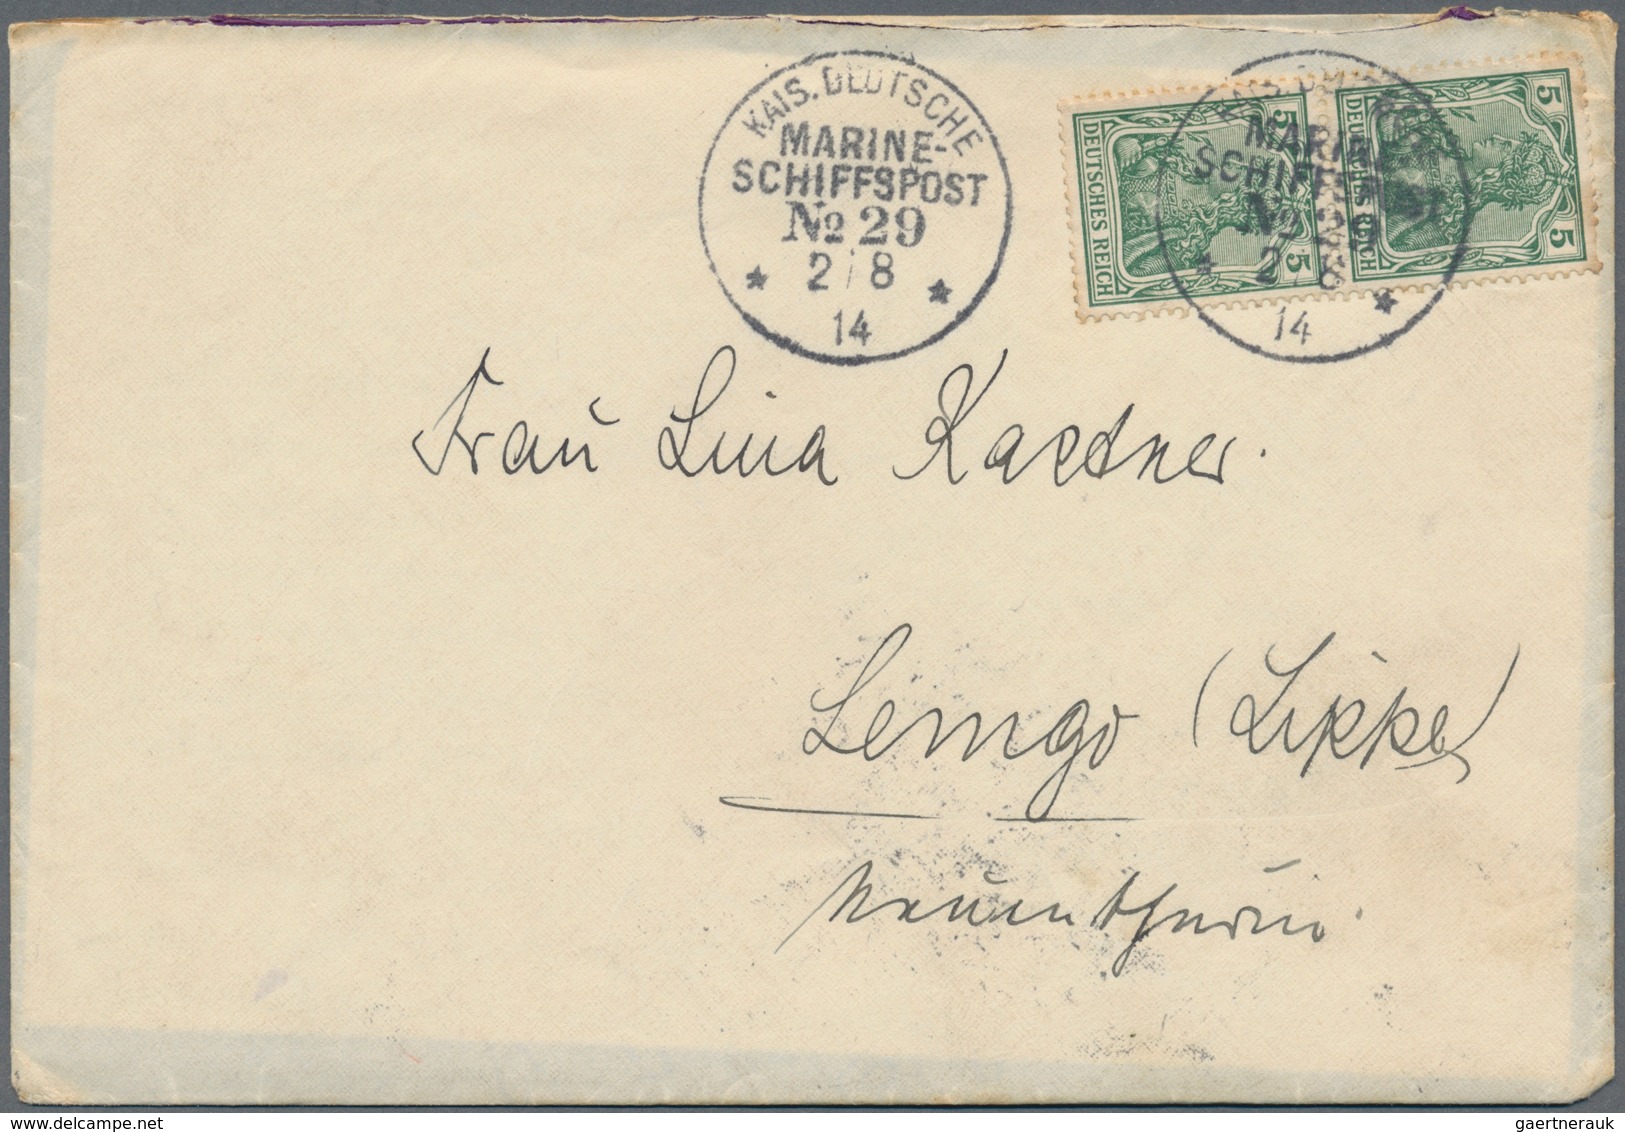 18537 Deutsche Post in der Türkei: 1914, Partie mit 4 Bedarfsbriefen aus einer Korrespondenz, jeder Brief